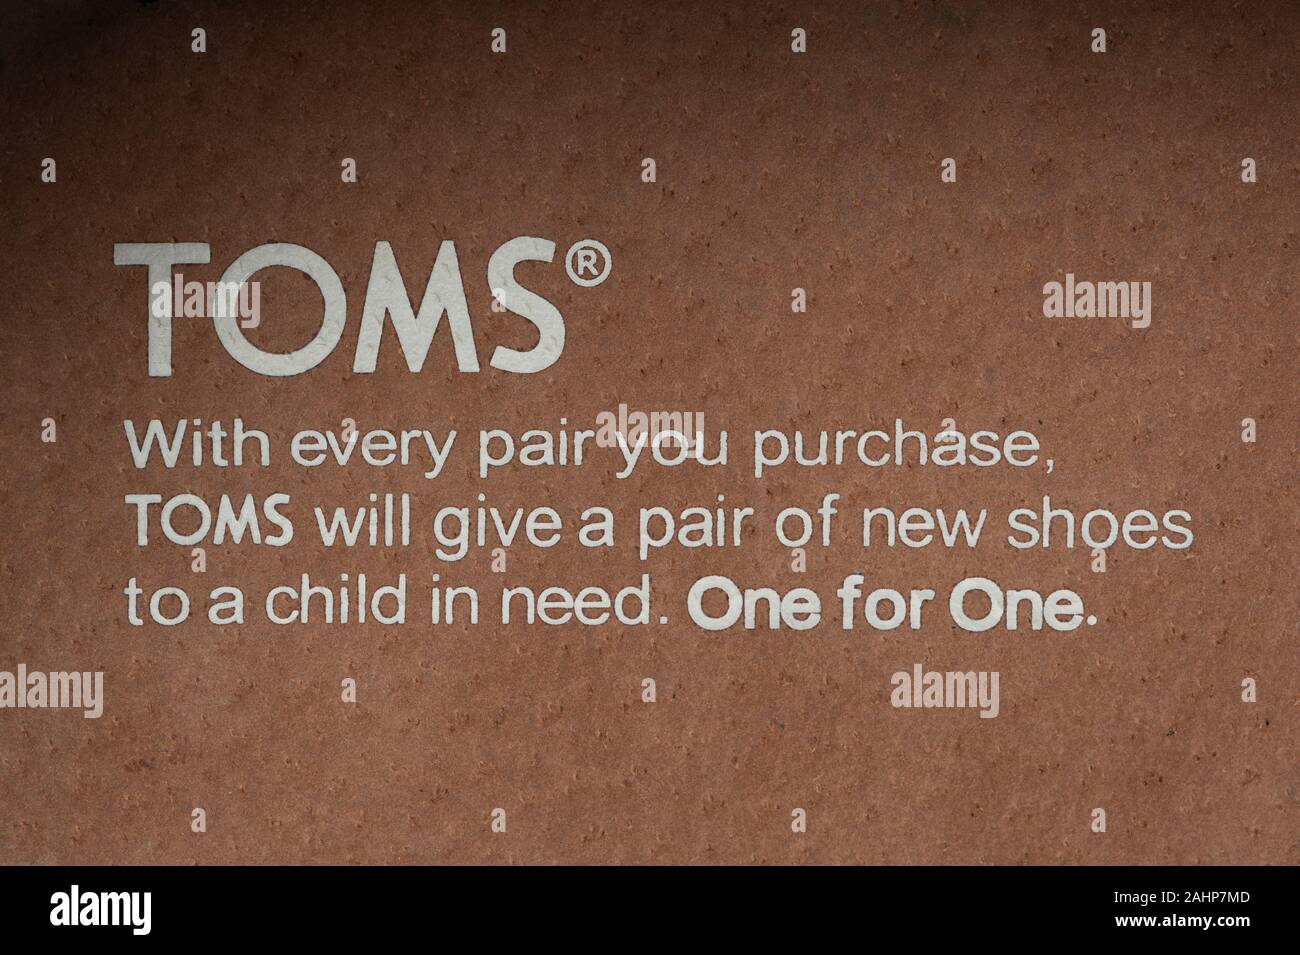 Un mensaje se ve en la plantilla de un producto calzado Toms Shoes acompañada por la frase "uno por uno". Foto de stock